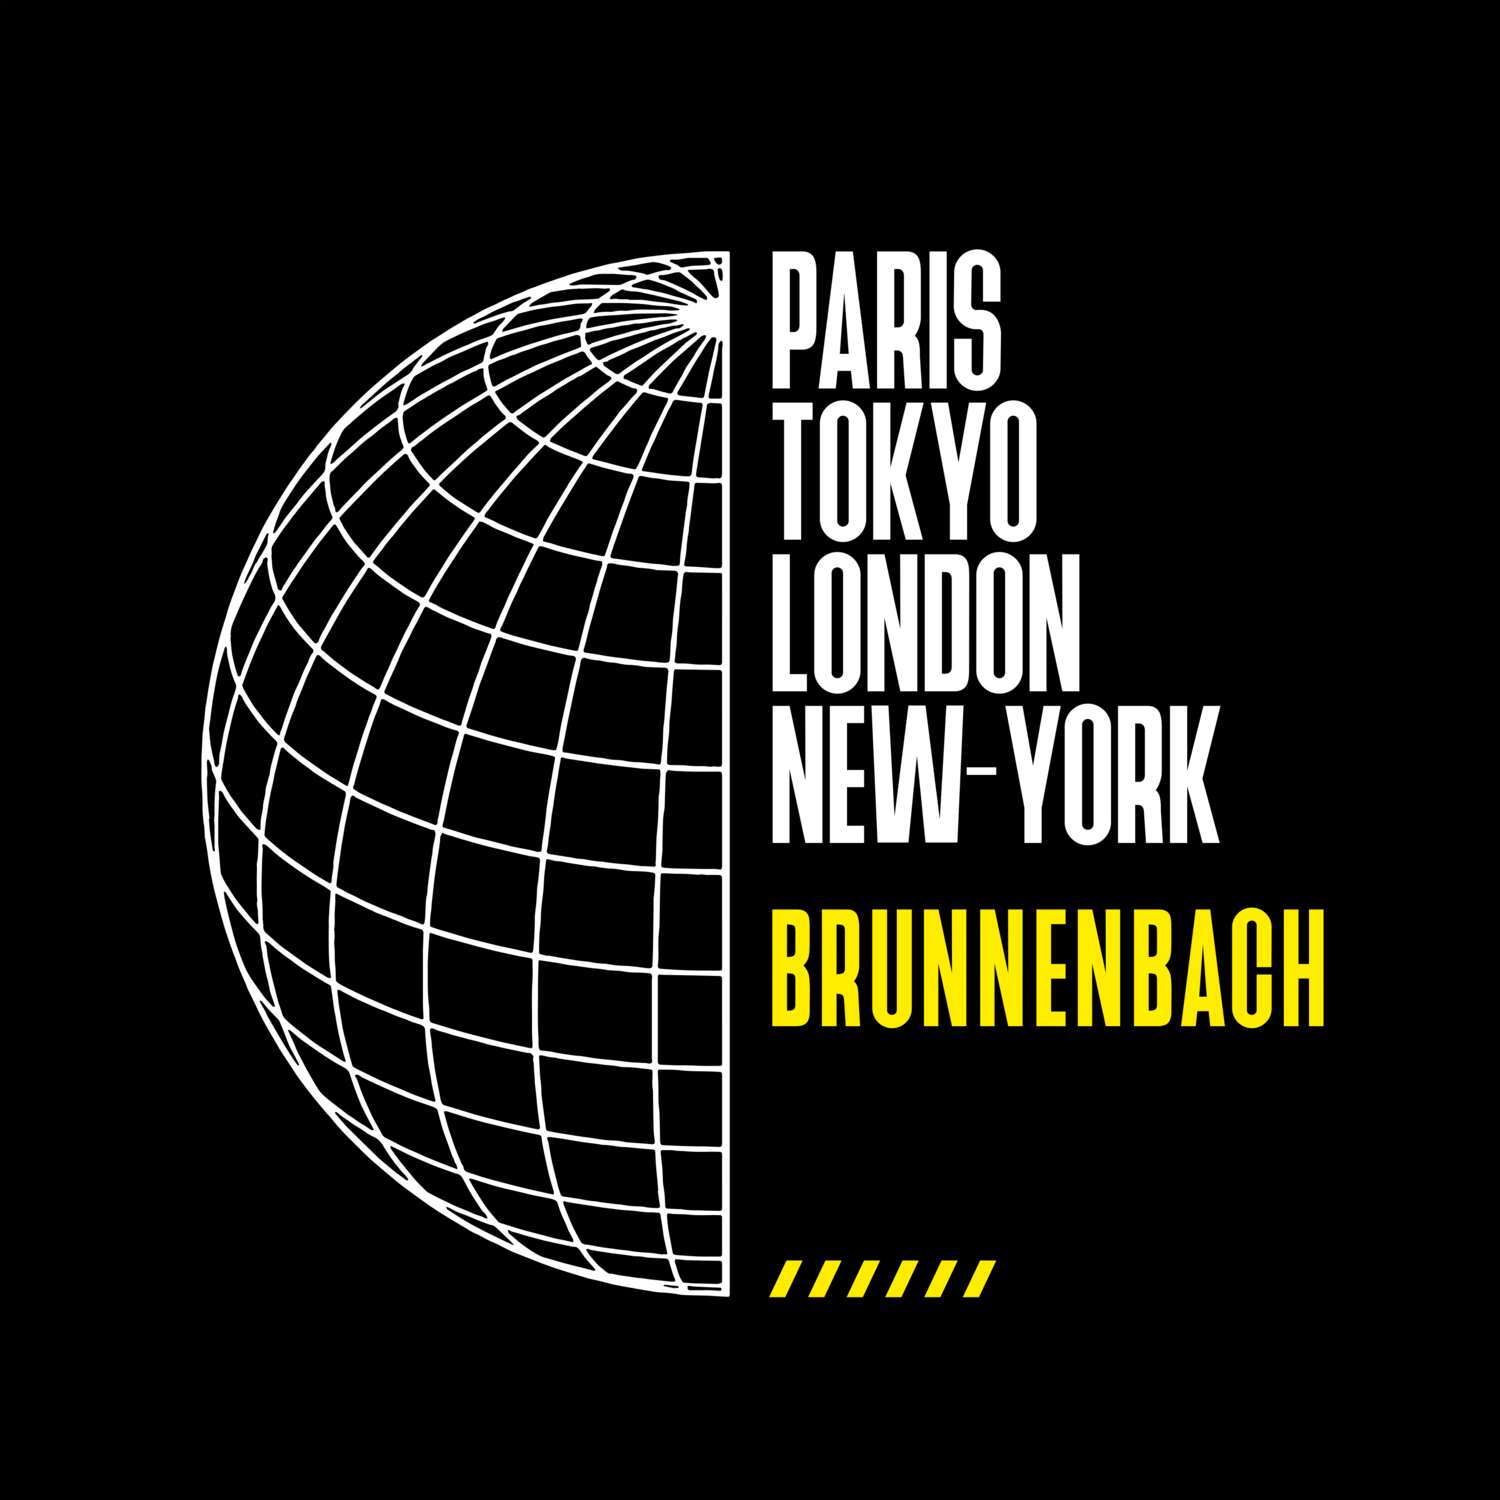 Brunnenbach T-Shirt »Paris Tokyo London«